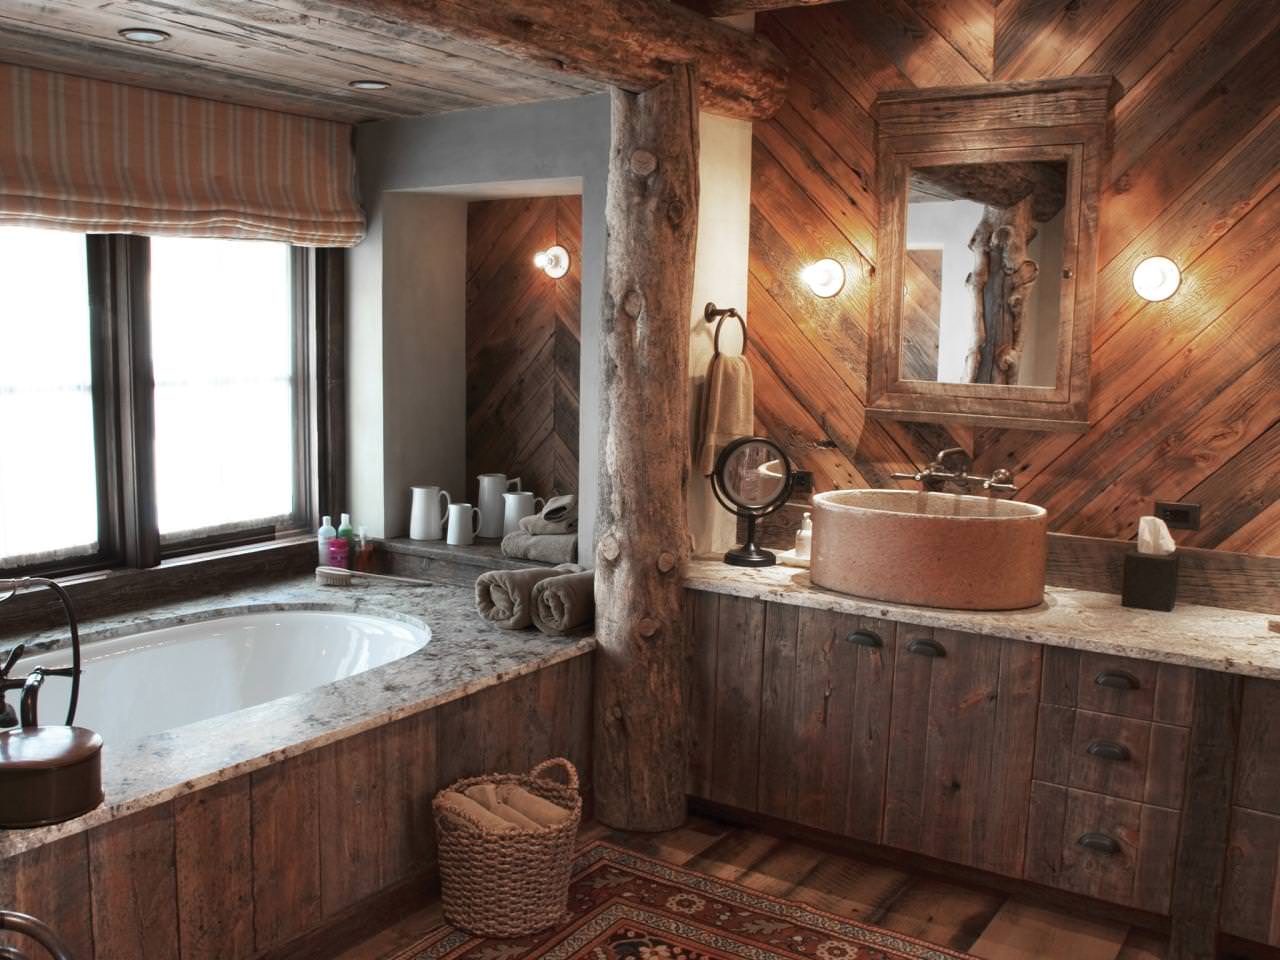 Fürdőszoba egy faházban: fotó egy gyönyörű kivitel belsejéről egy házban egy bárból